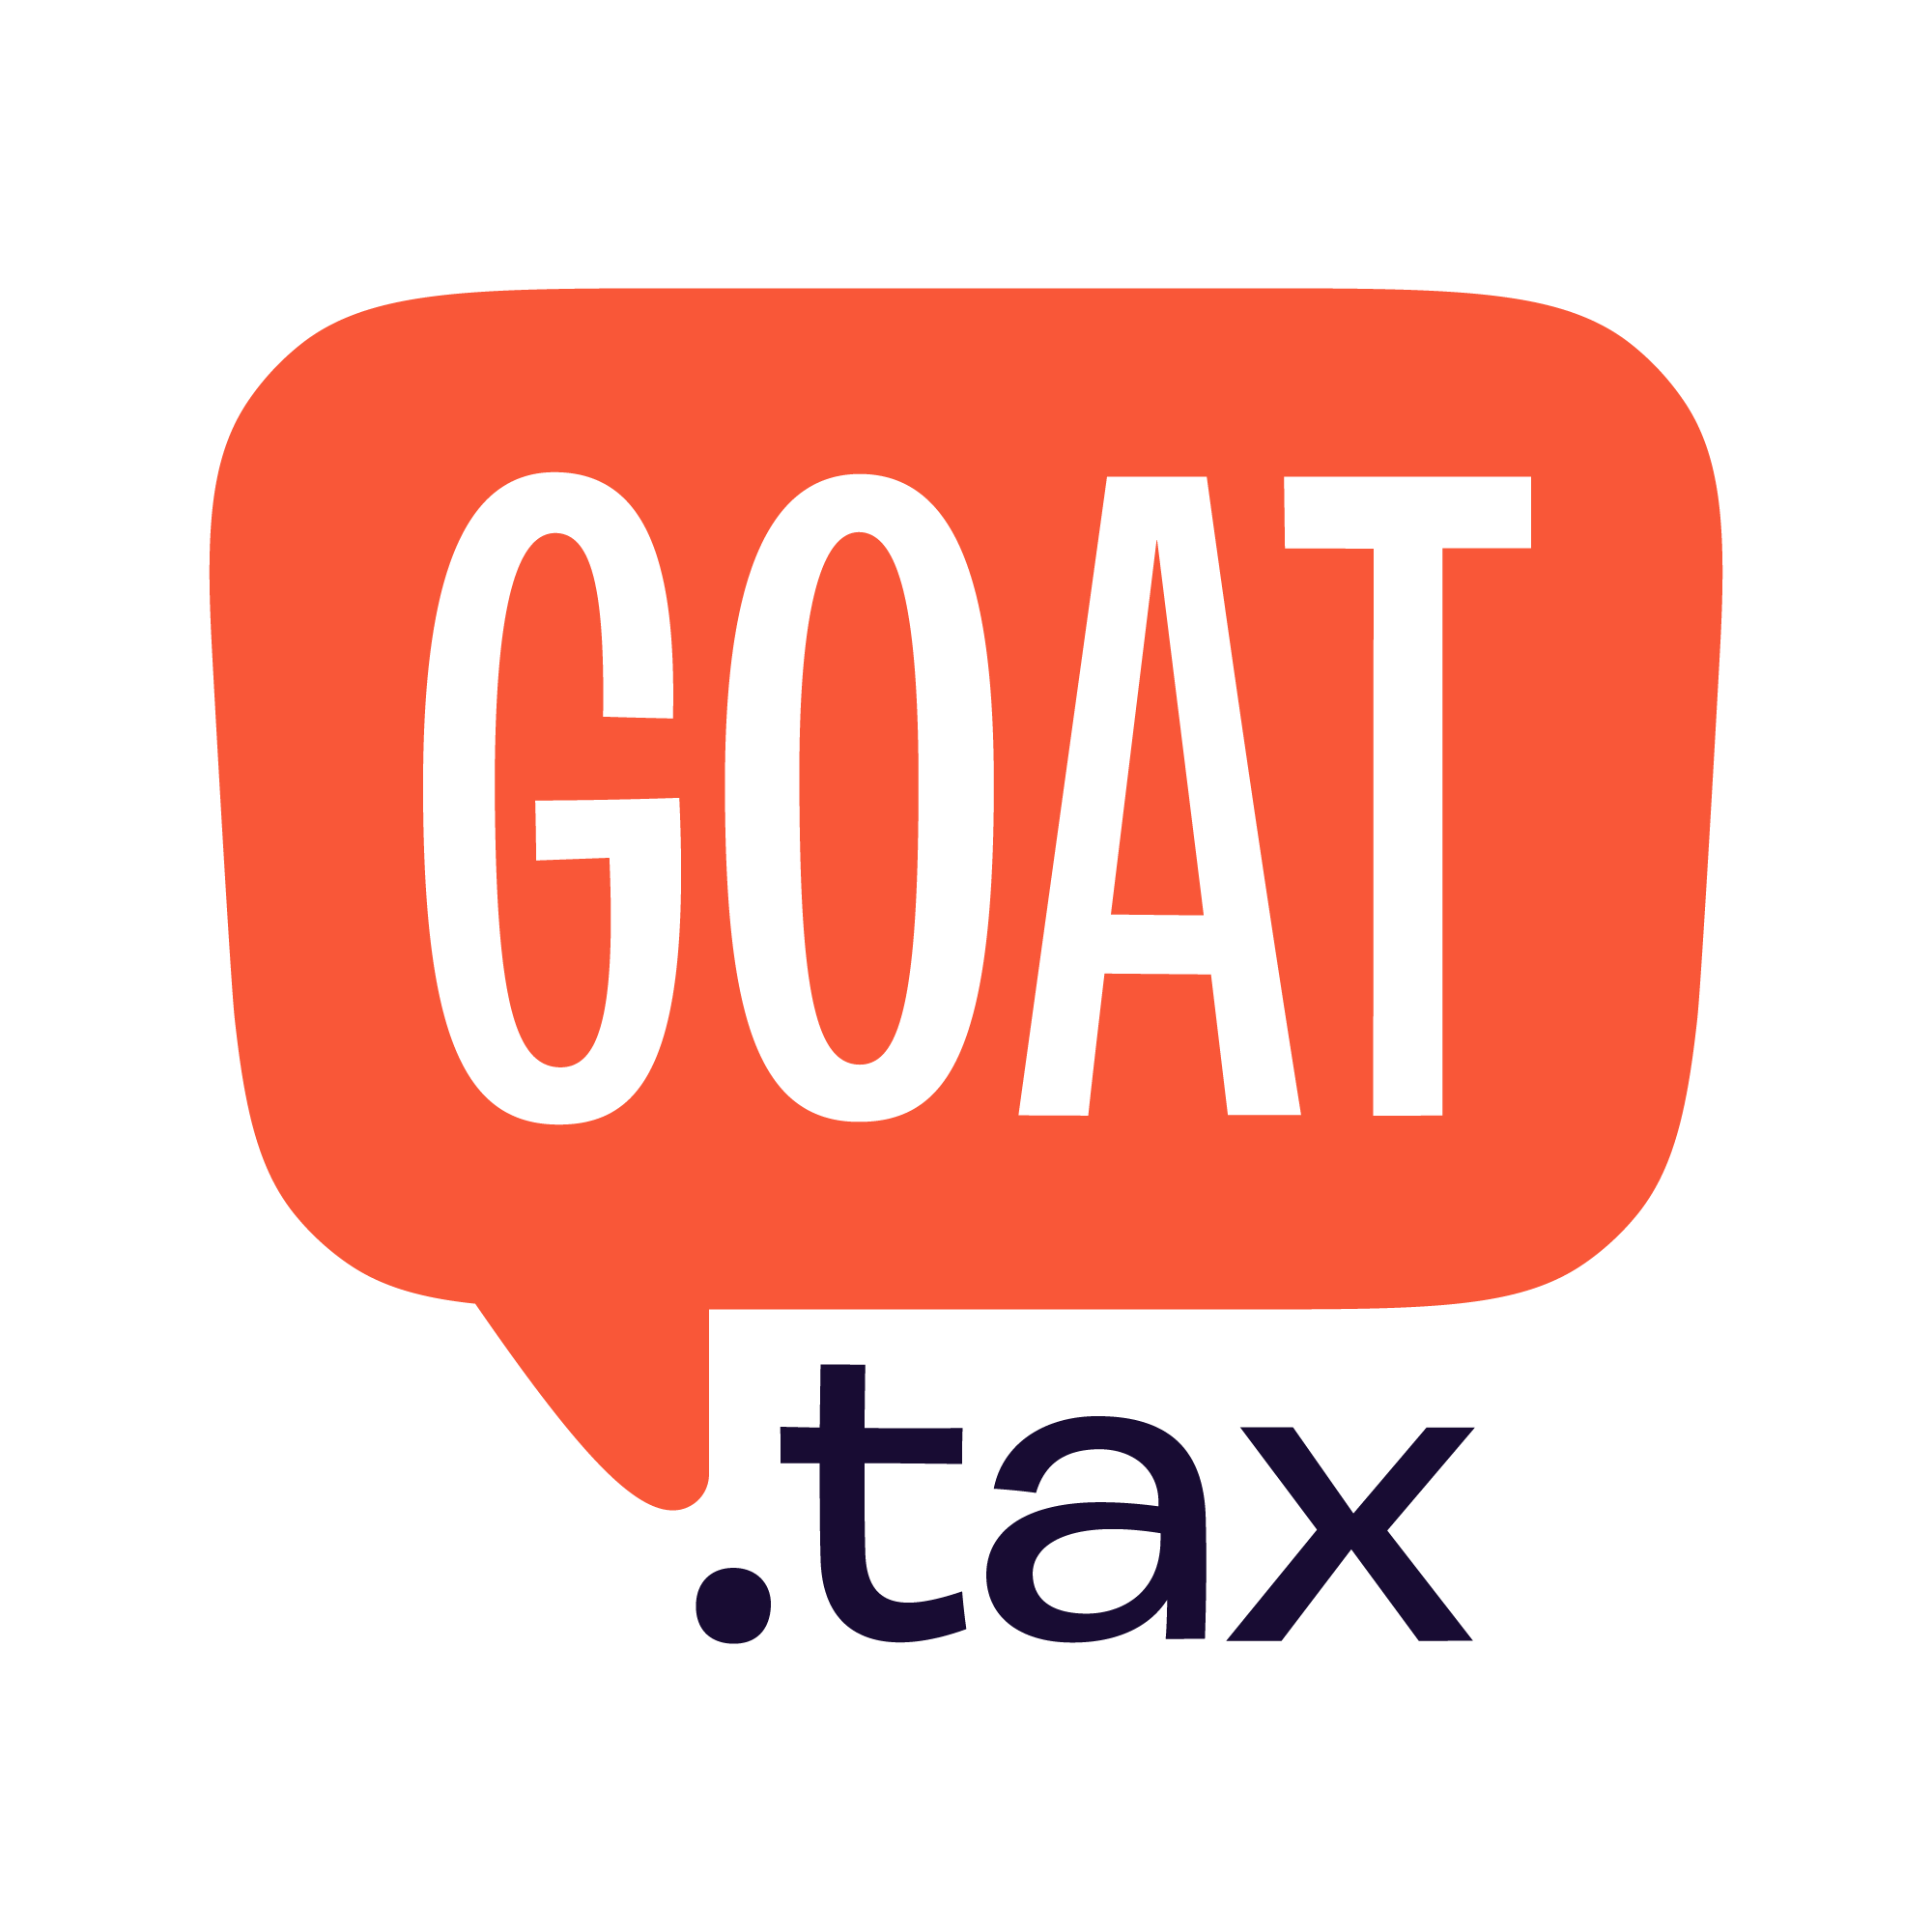 Goat.tax